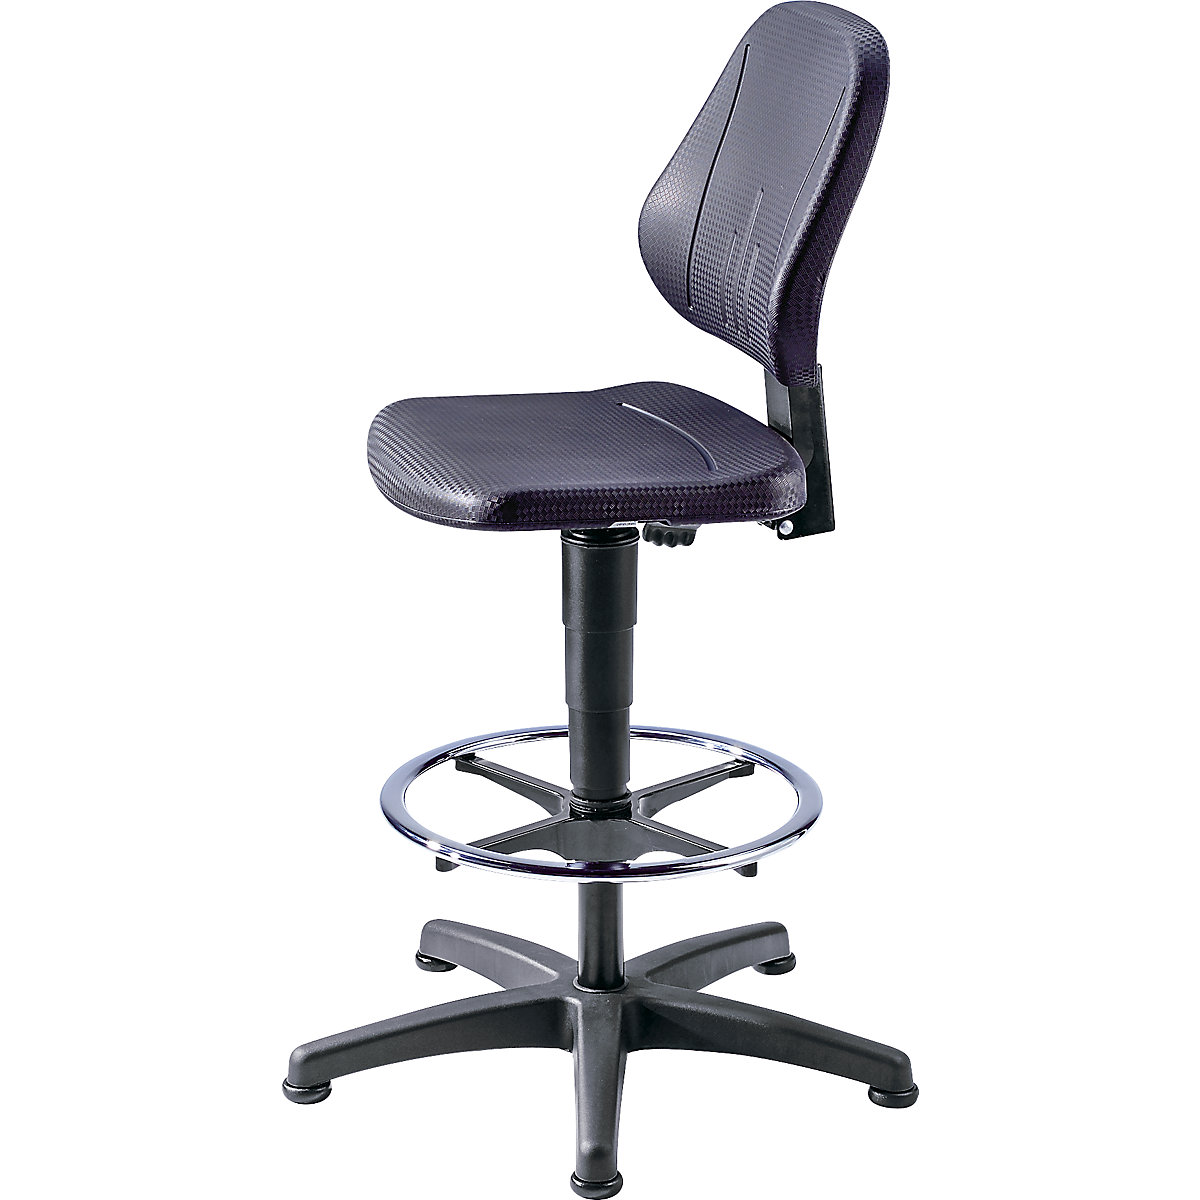 Pracovní otočná židle – bimos, s přestavováním výšky plynovým pístem, PU pěna, černá barva, s podlahovými patkami a nožním kruhem-8